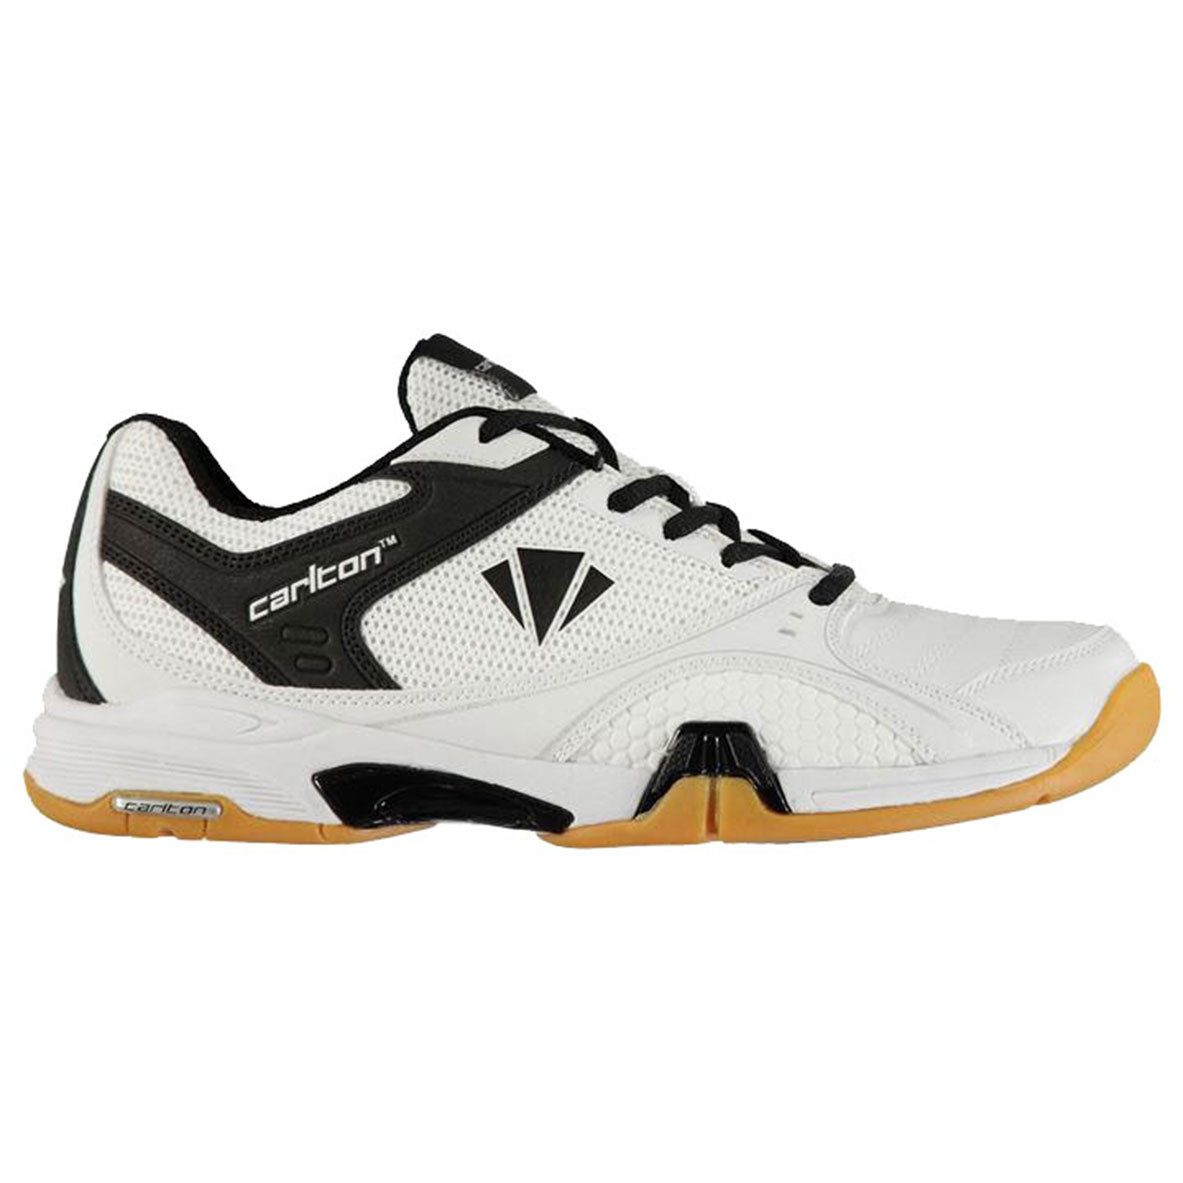 Carlton Men's Airblade Tour Tennis Shoes - White, 10.5